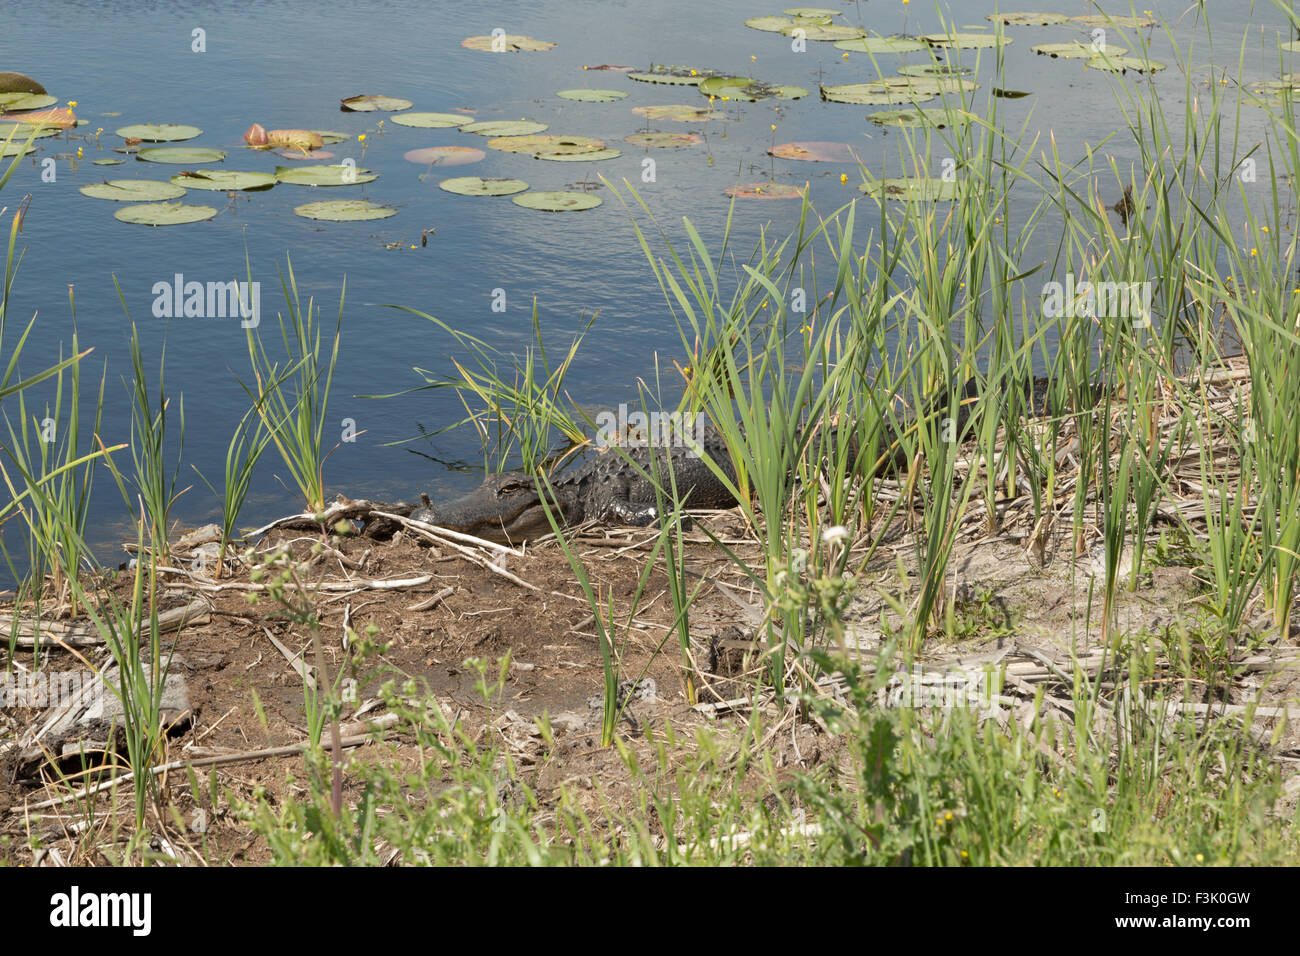 Una fotografia di un coccodrillo americano nel selvaggio vicino a Savannah in Georgia. Foto Stock